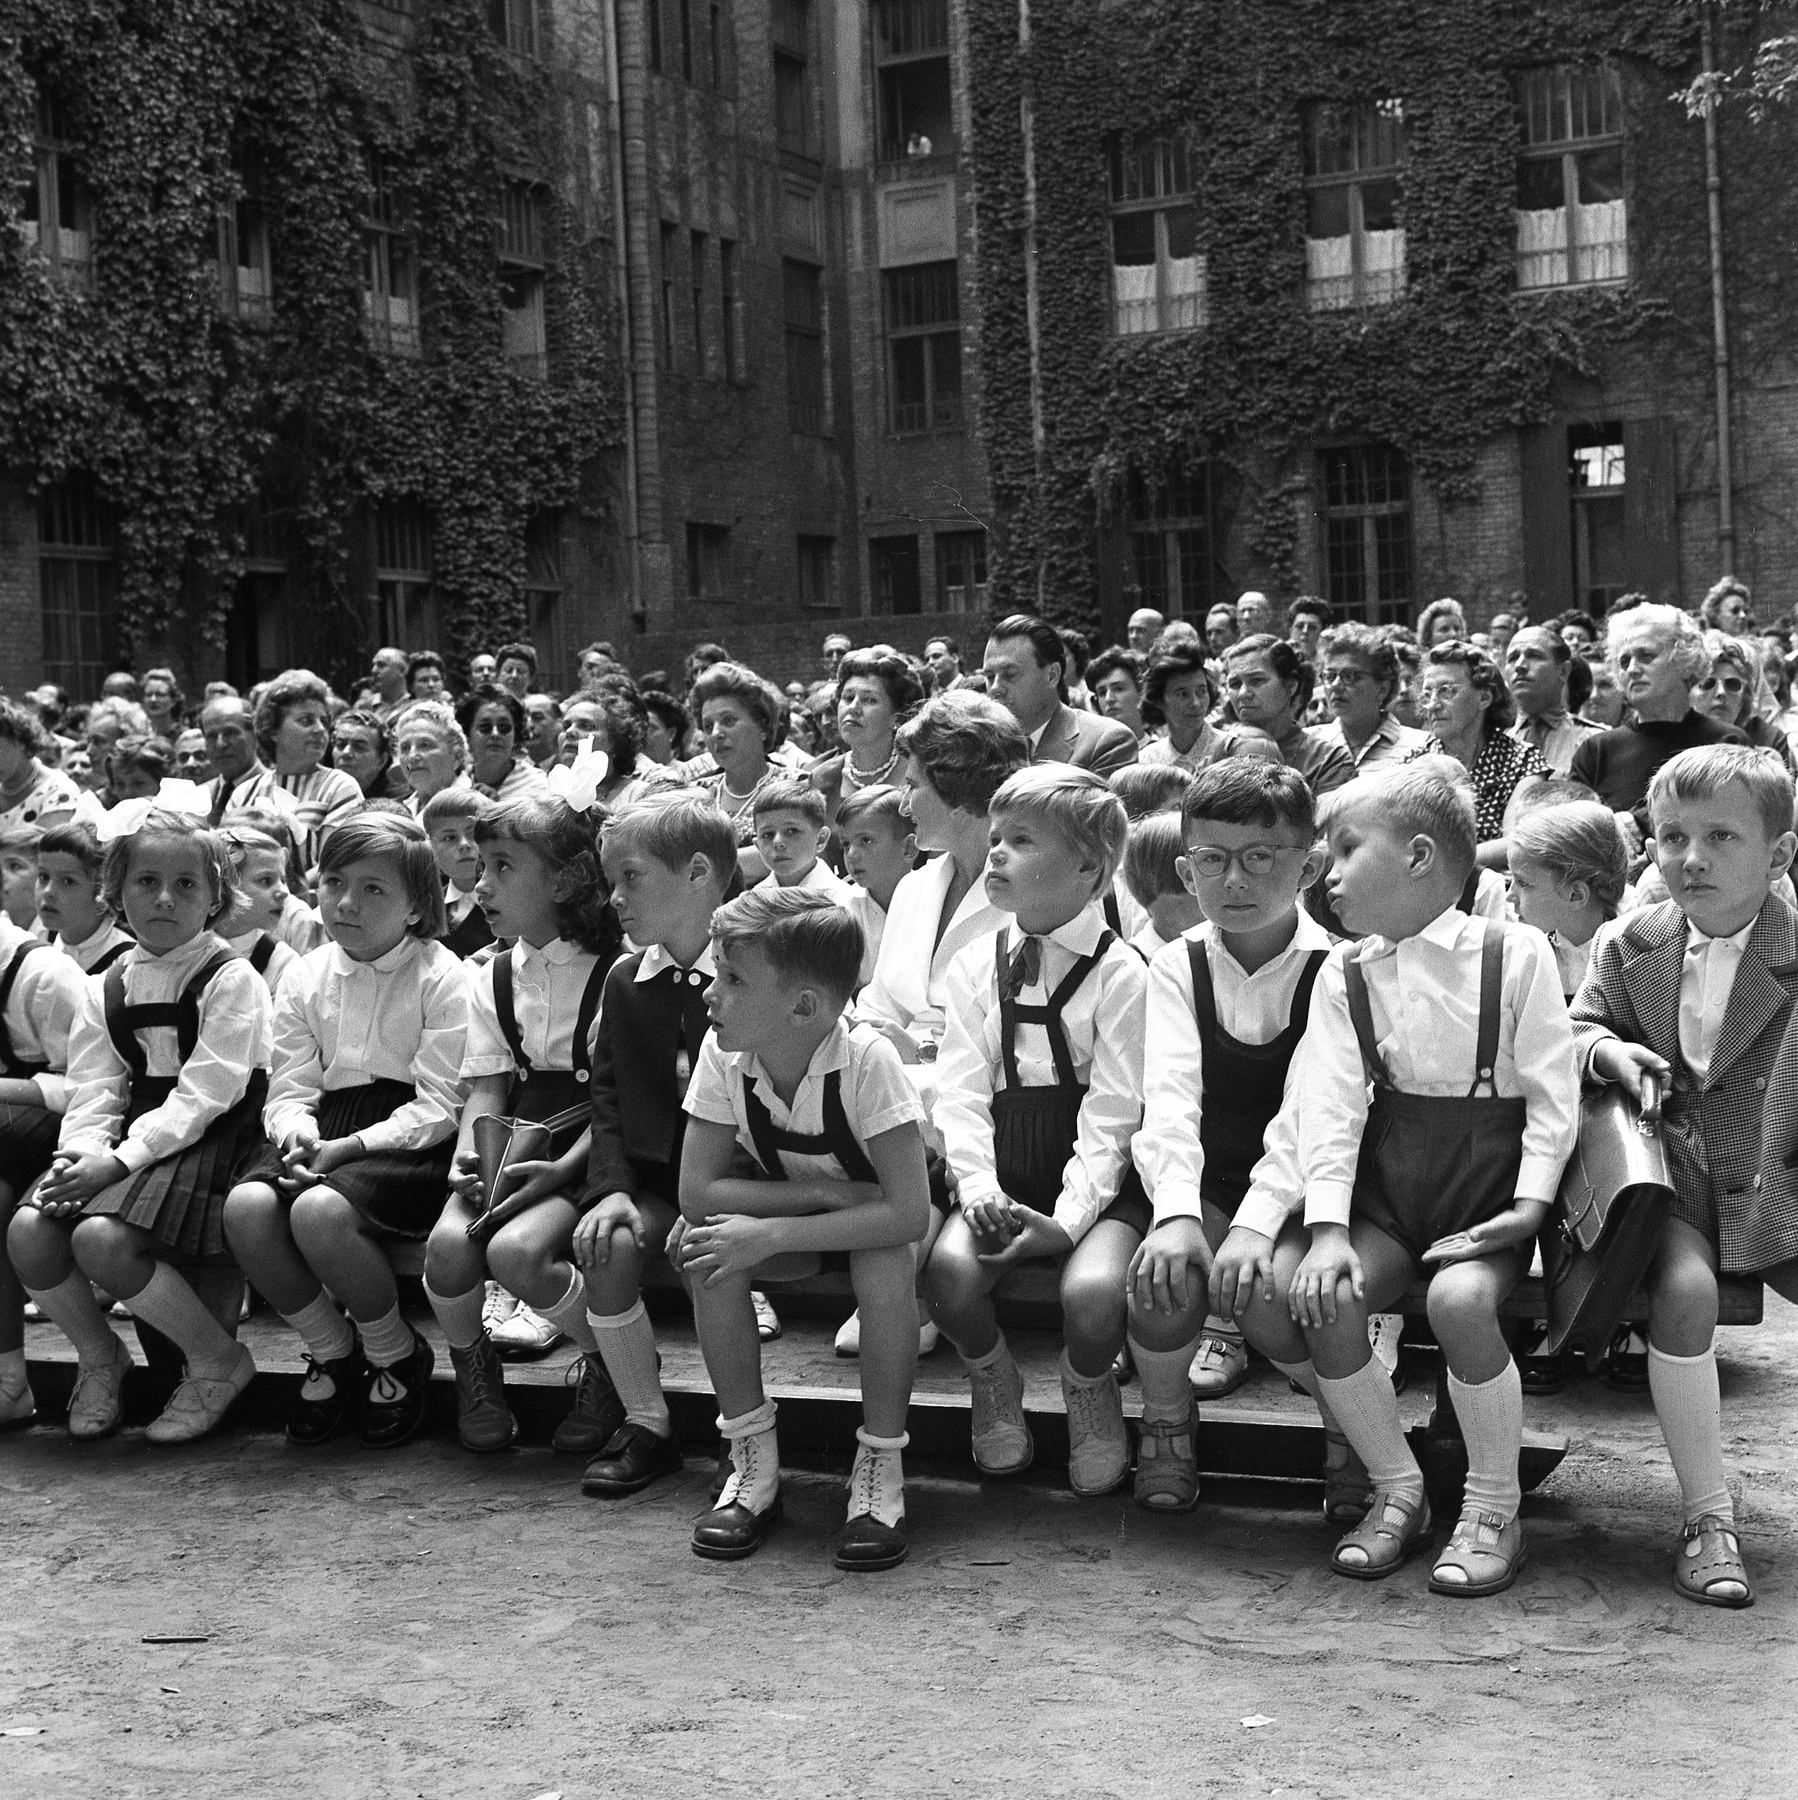 Magyarország, Budapest V., Papnövelde (Eötvös Loránd) utca 4-6. ELTE Apáczai Csere János Gyakorló Általános Iskola és Gimnázium, tanévnyitó ünnepség. 1960.